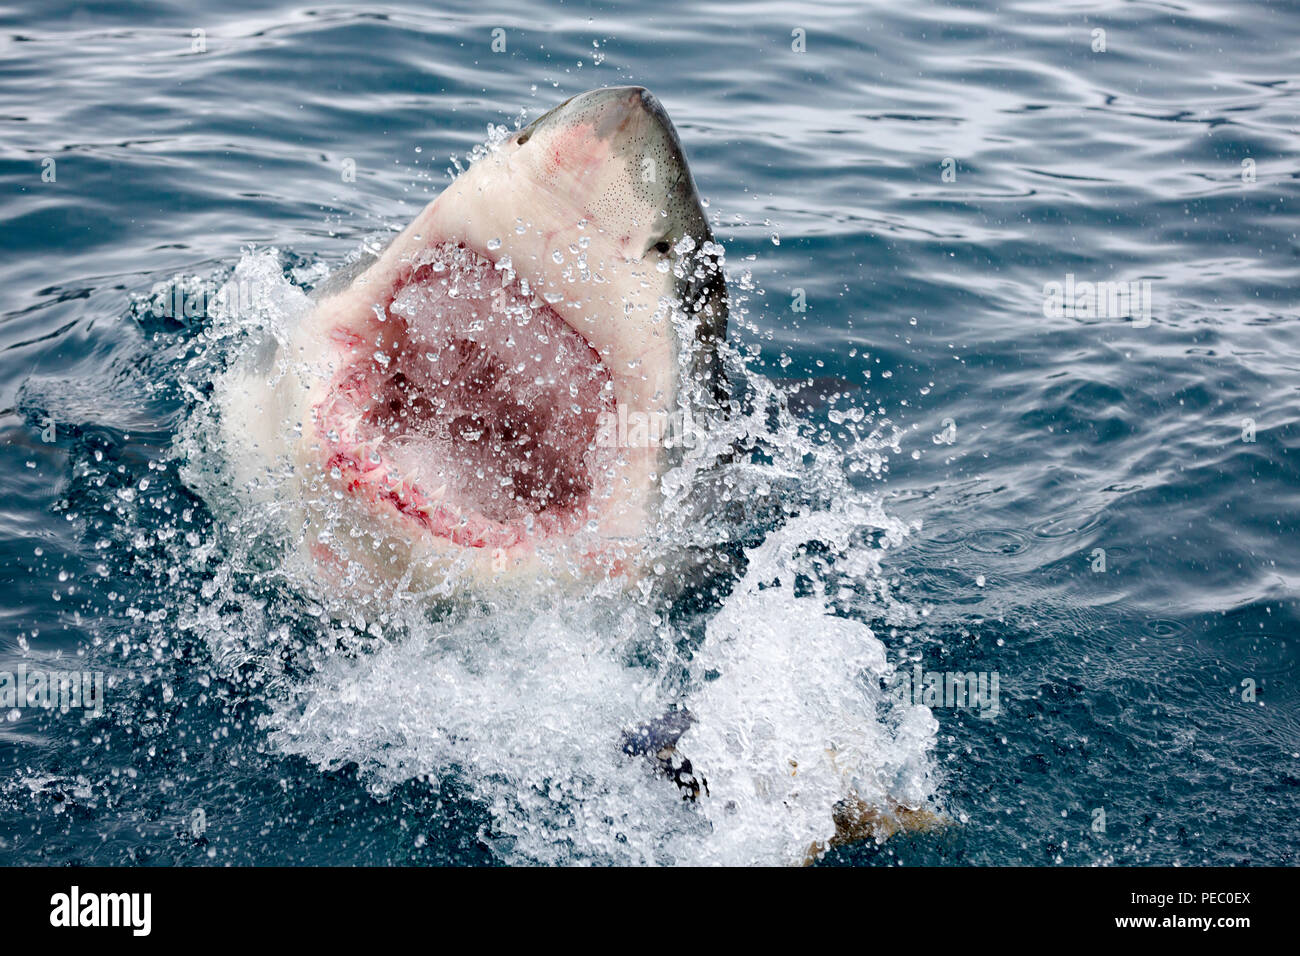 Avec la bouche ouverte, un grand requin blanc, Carcharodon carcharias, brise la surface au large de l'île de Guadalupe, au Mexique. Banque D'Images